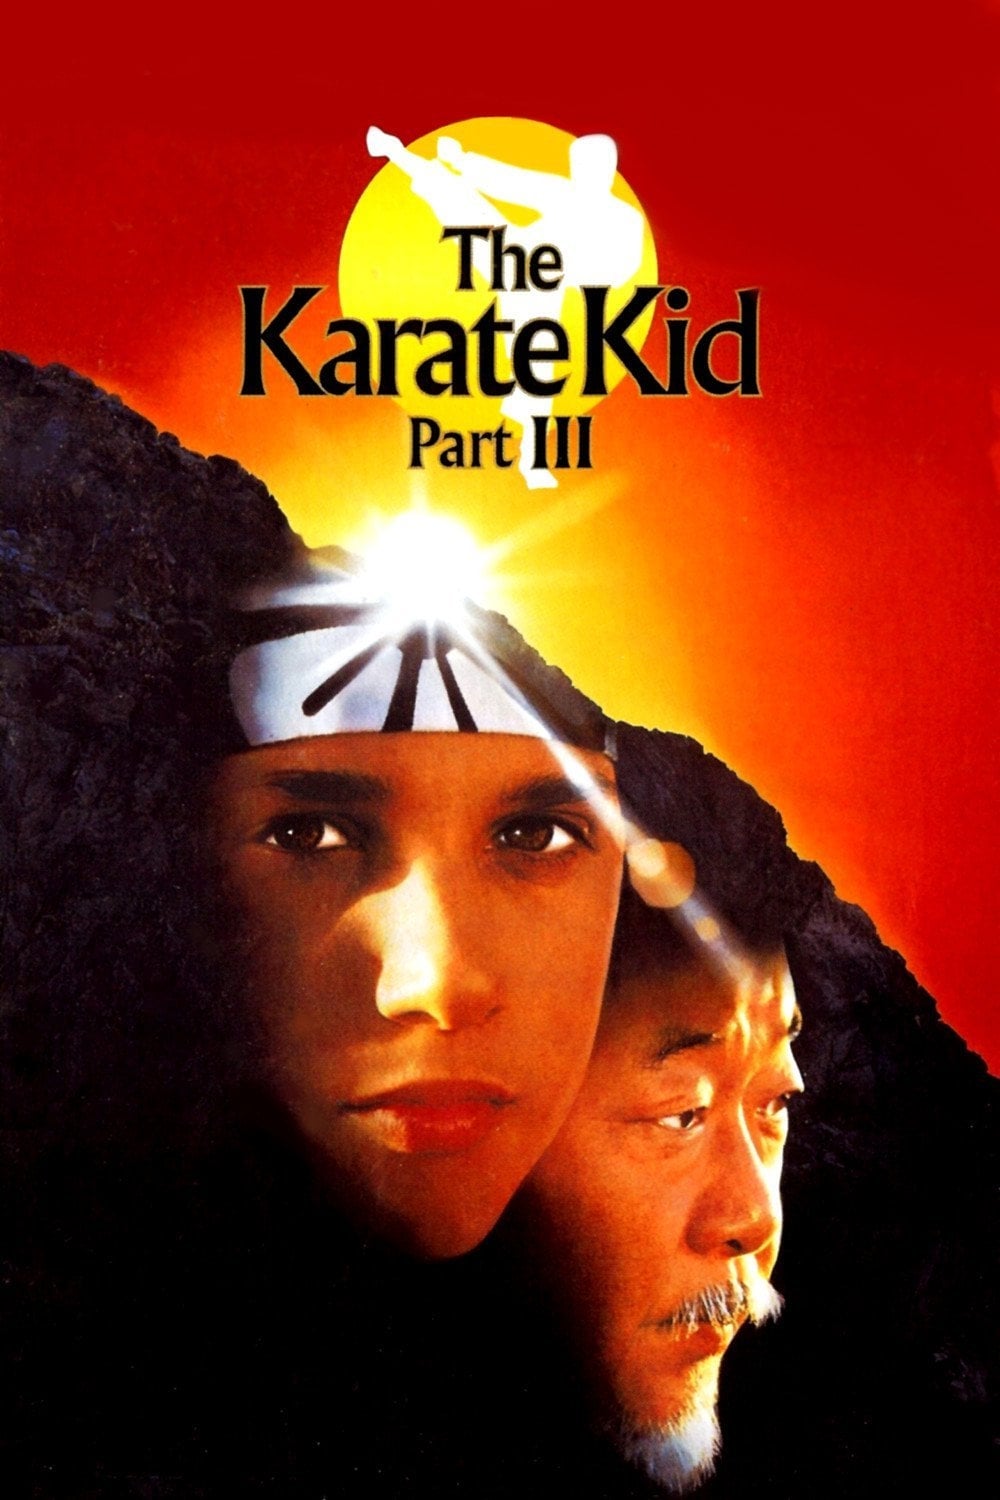 دانلود صوت دوبله فیلم The Karate Kid Part III